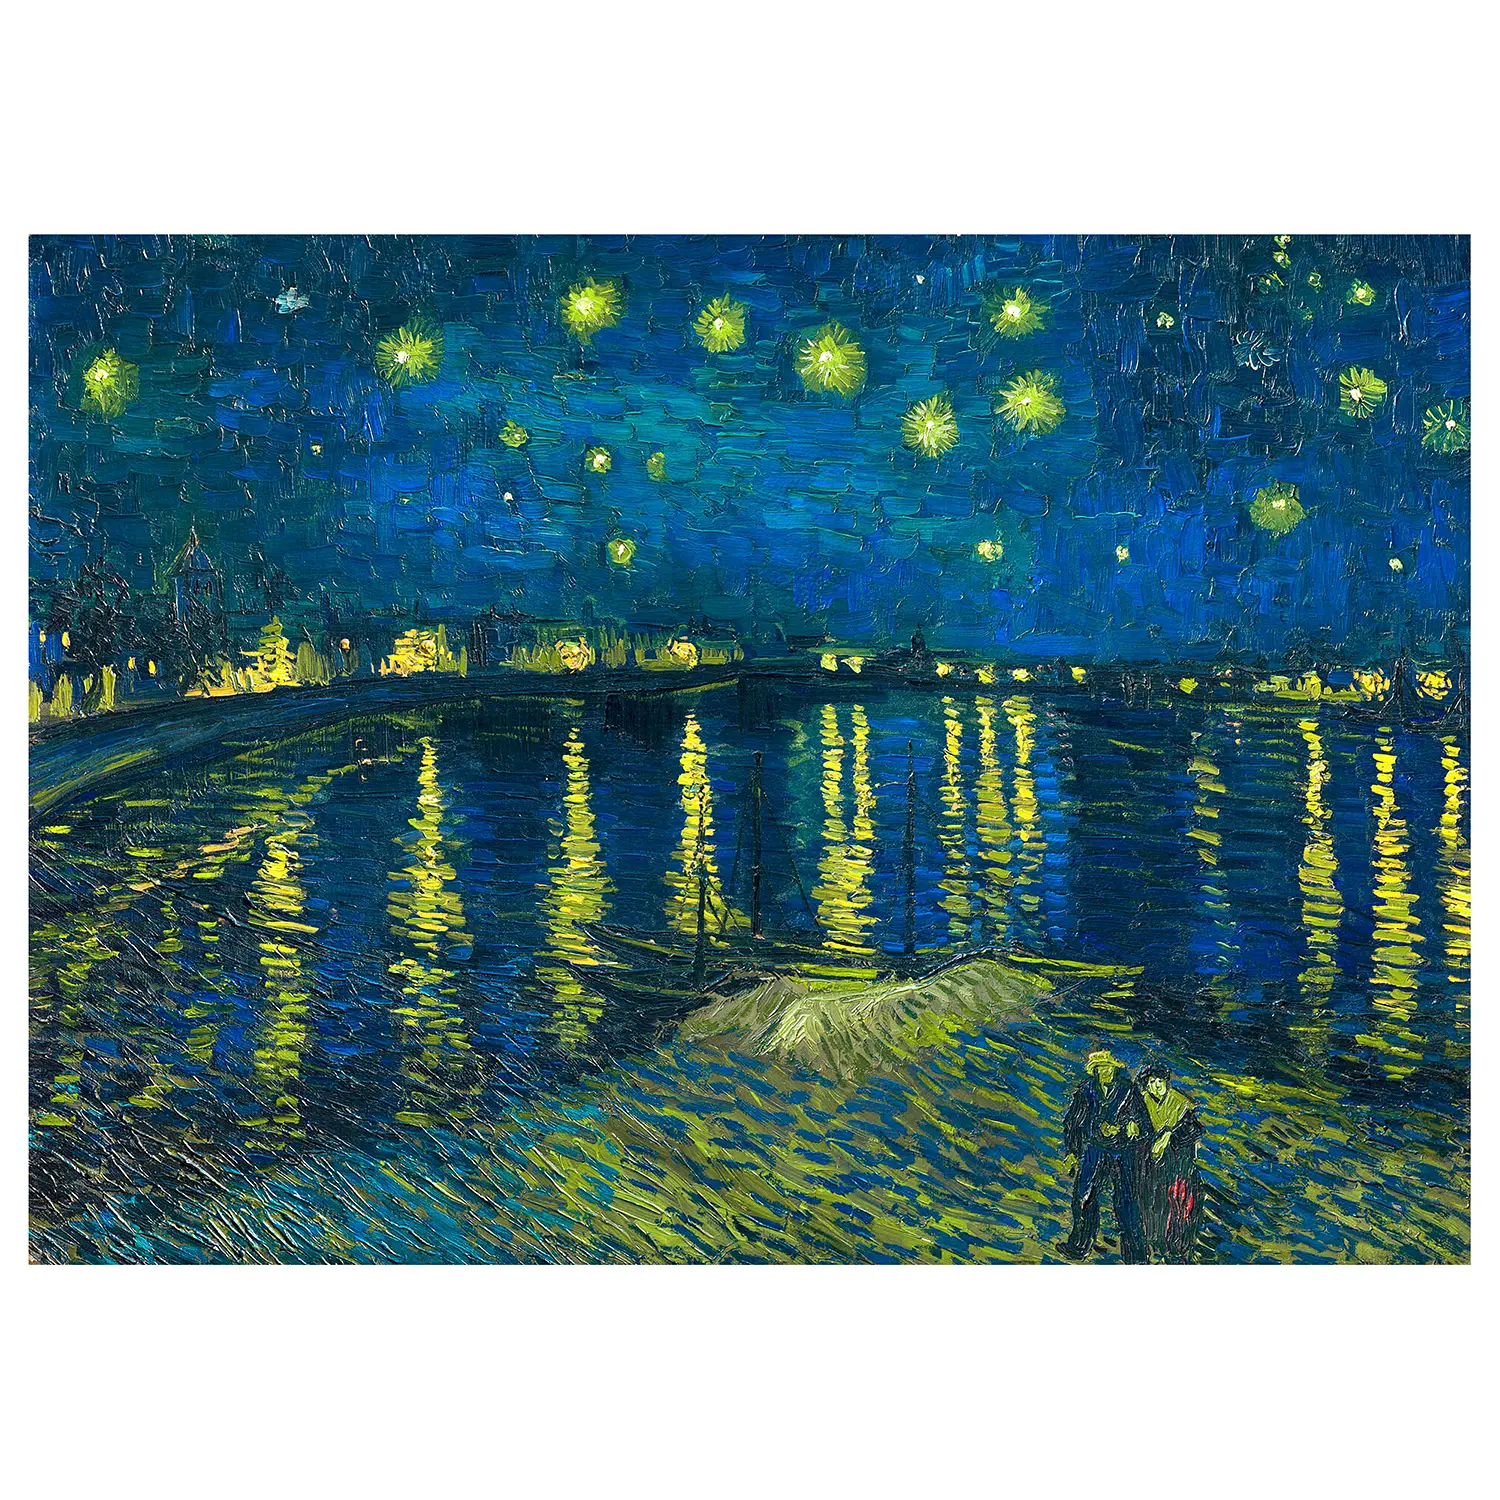 Starry Wandbild Night